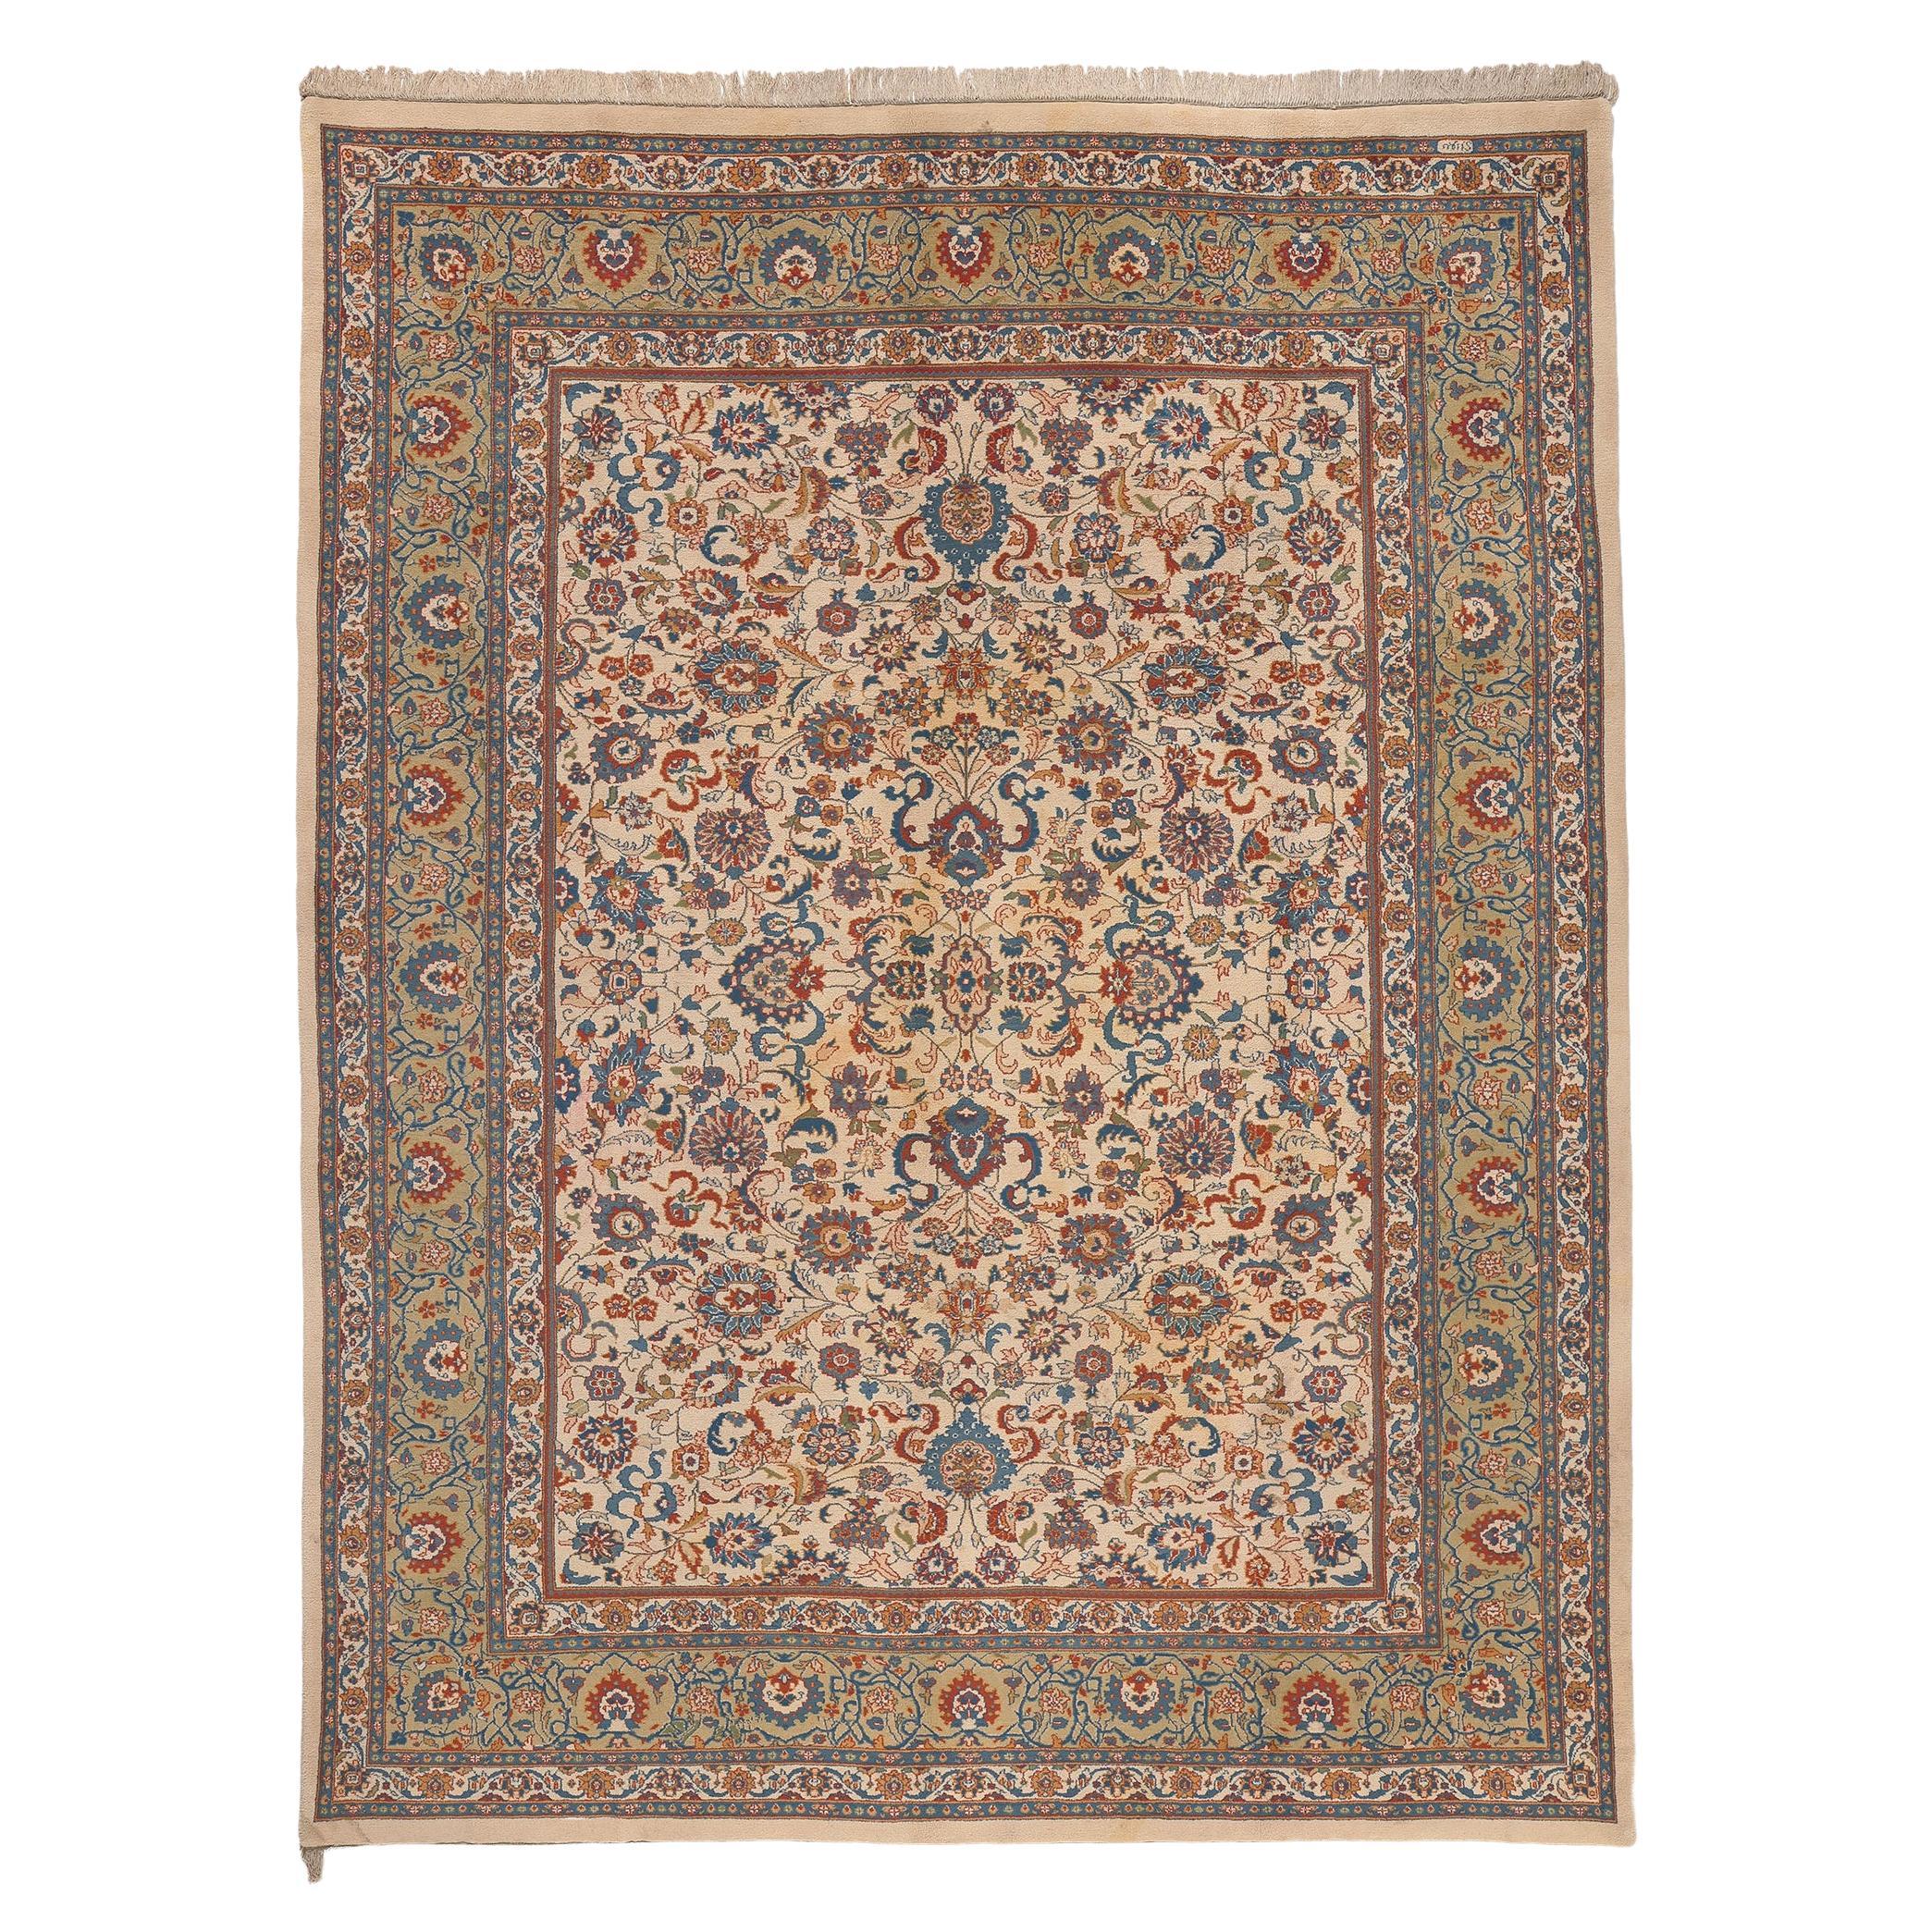 Indischer Tabriz-Teppich im Vintage-Stil, traditionelle Sensibilität trifft auf zeitlose Eleganz